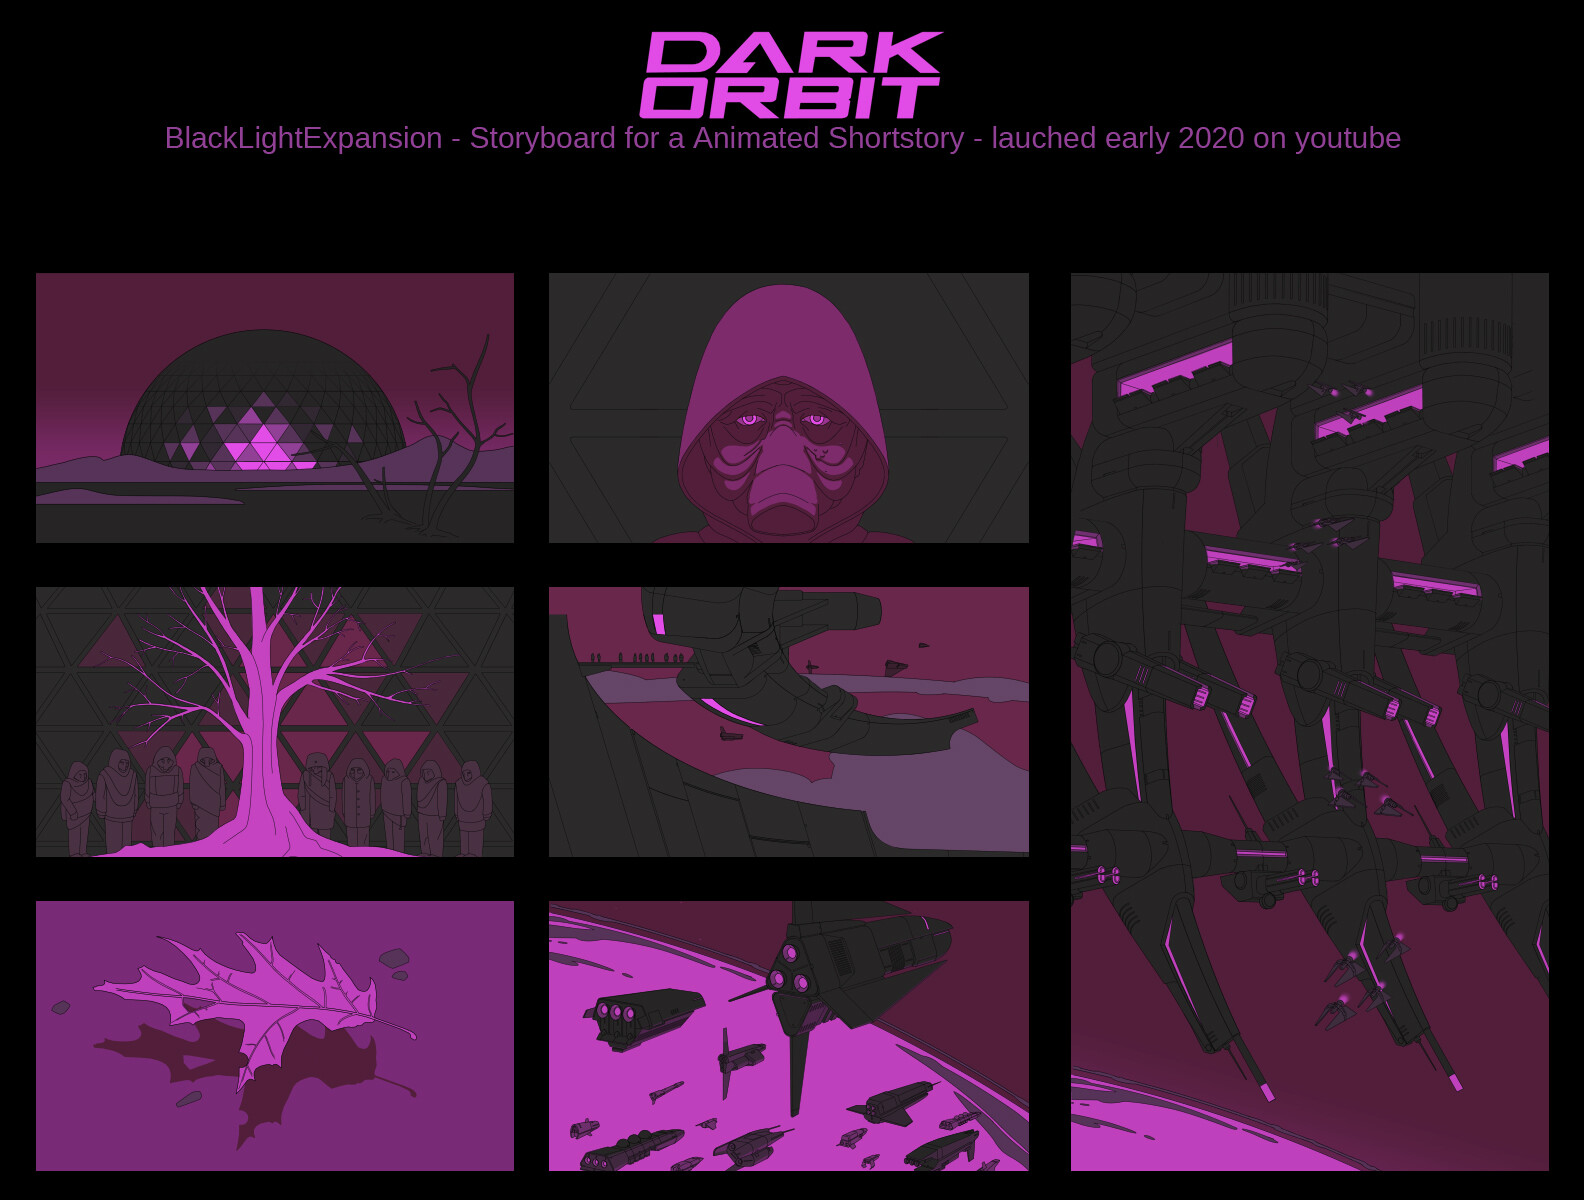 ArtStation Orbit - Blacklight Expansion Storyboard